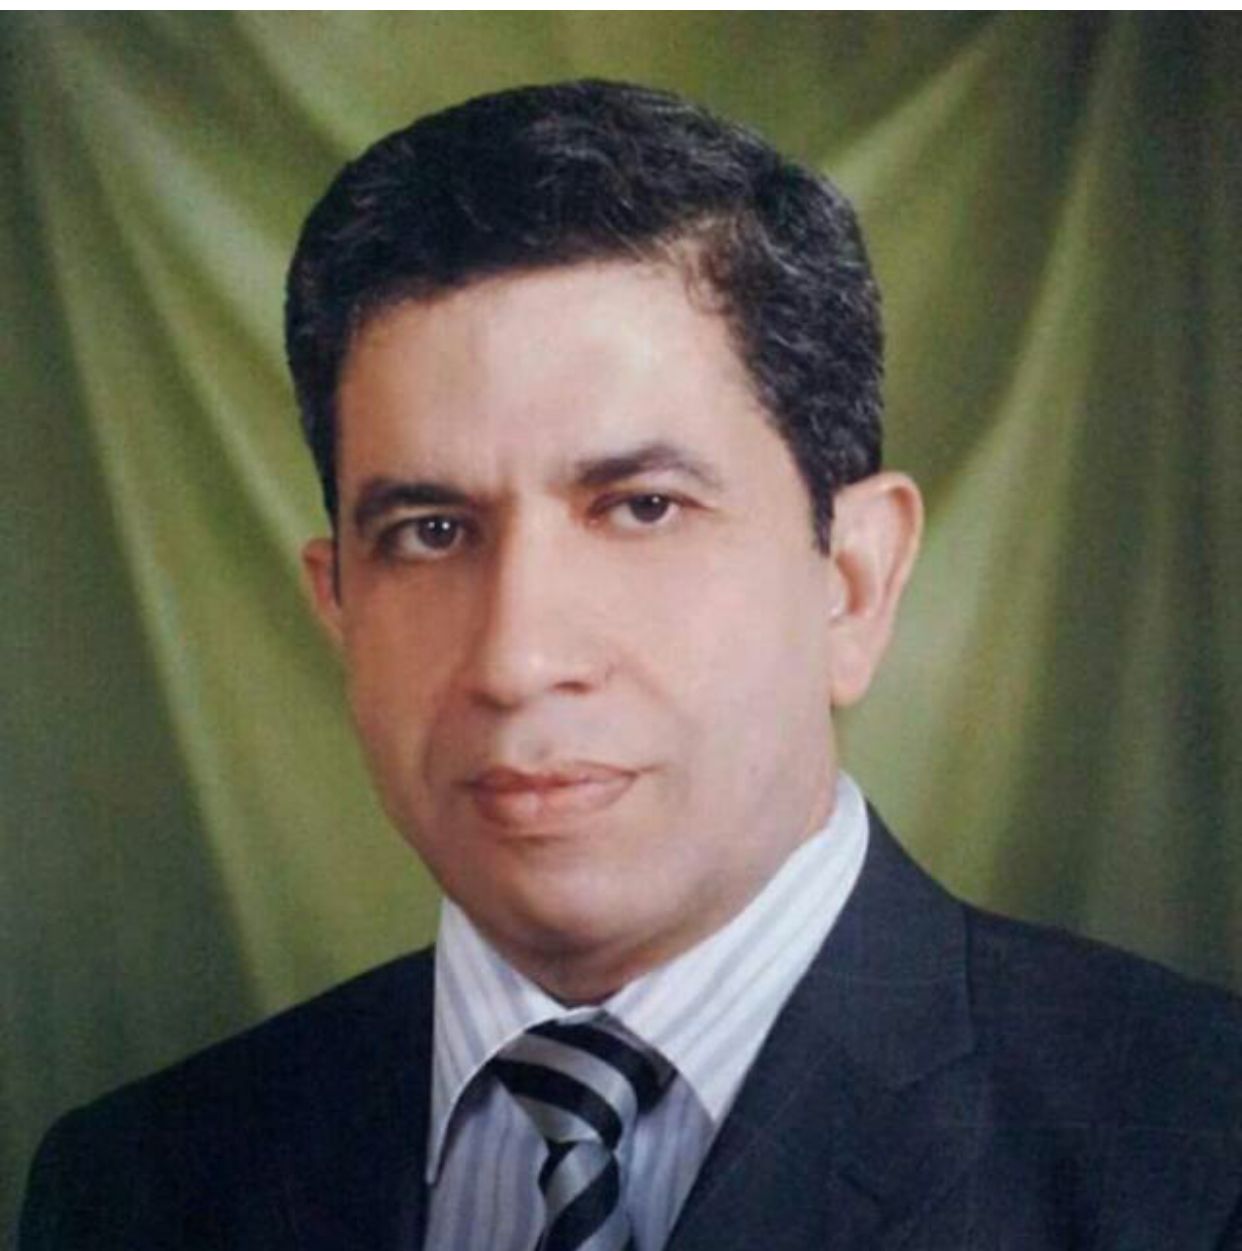 Dr. Safwat Abu Hashem